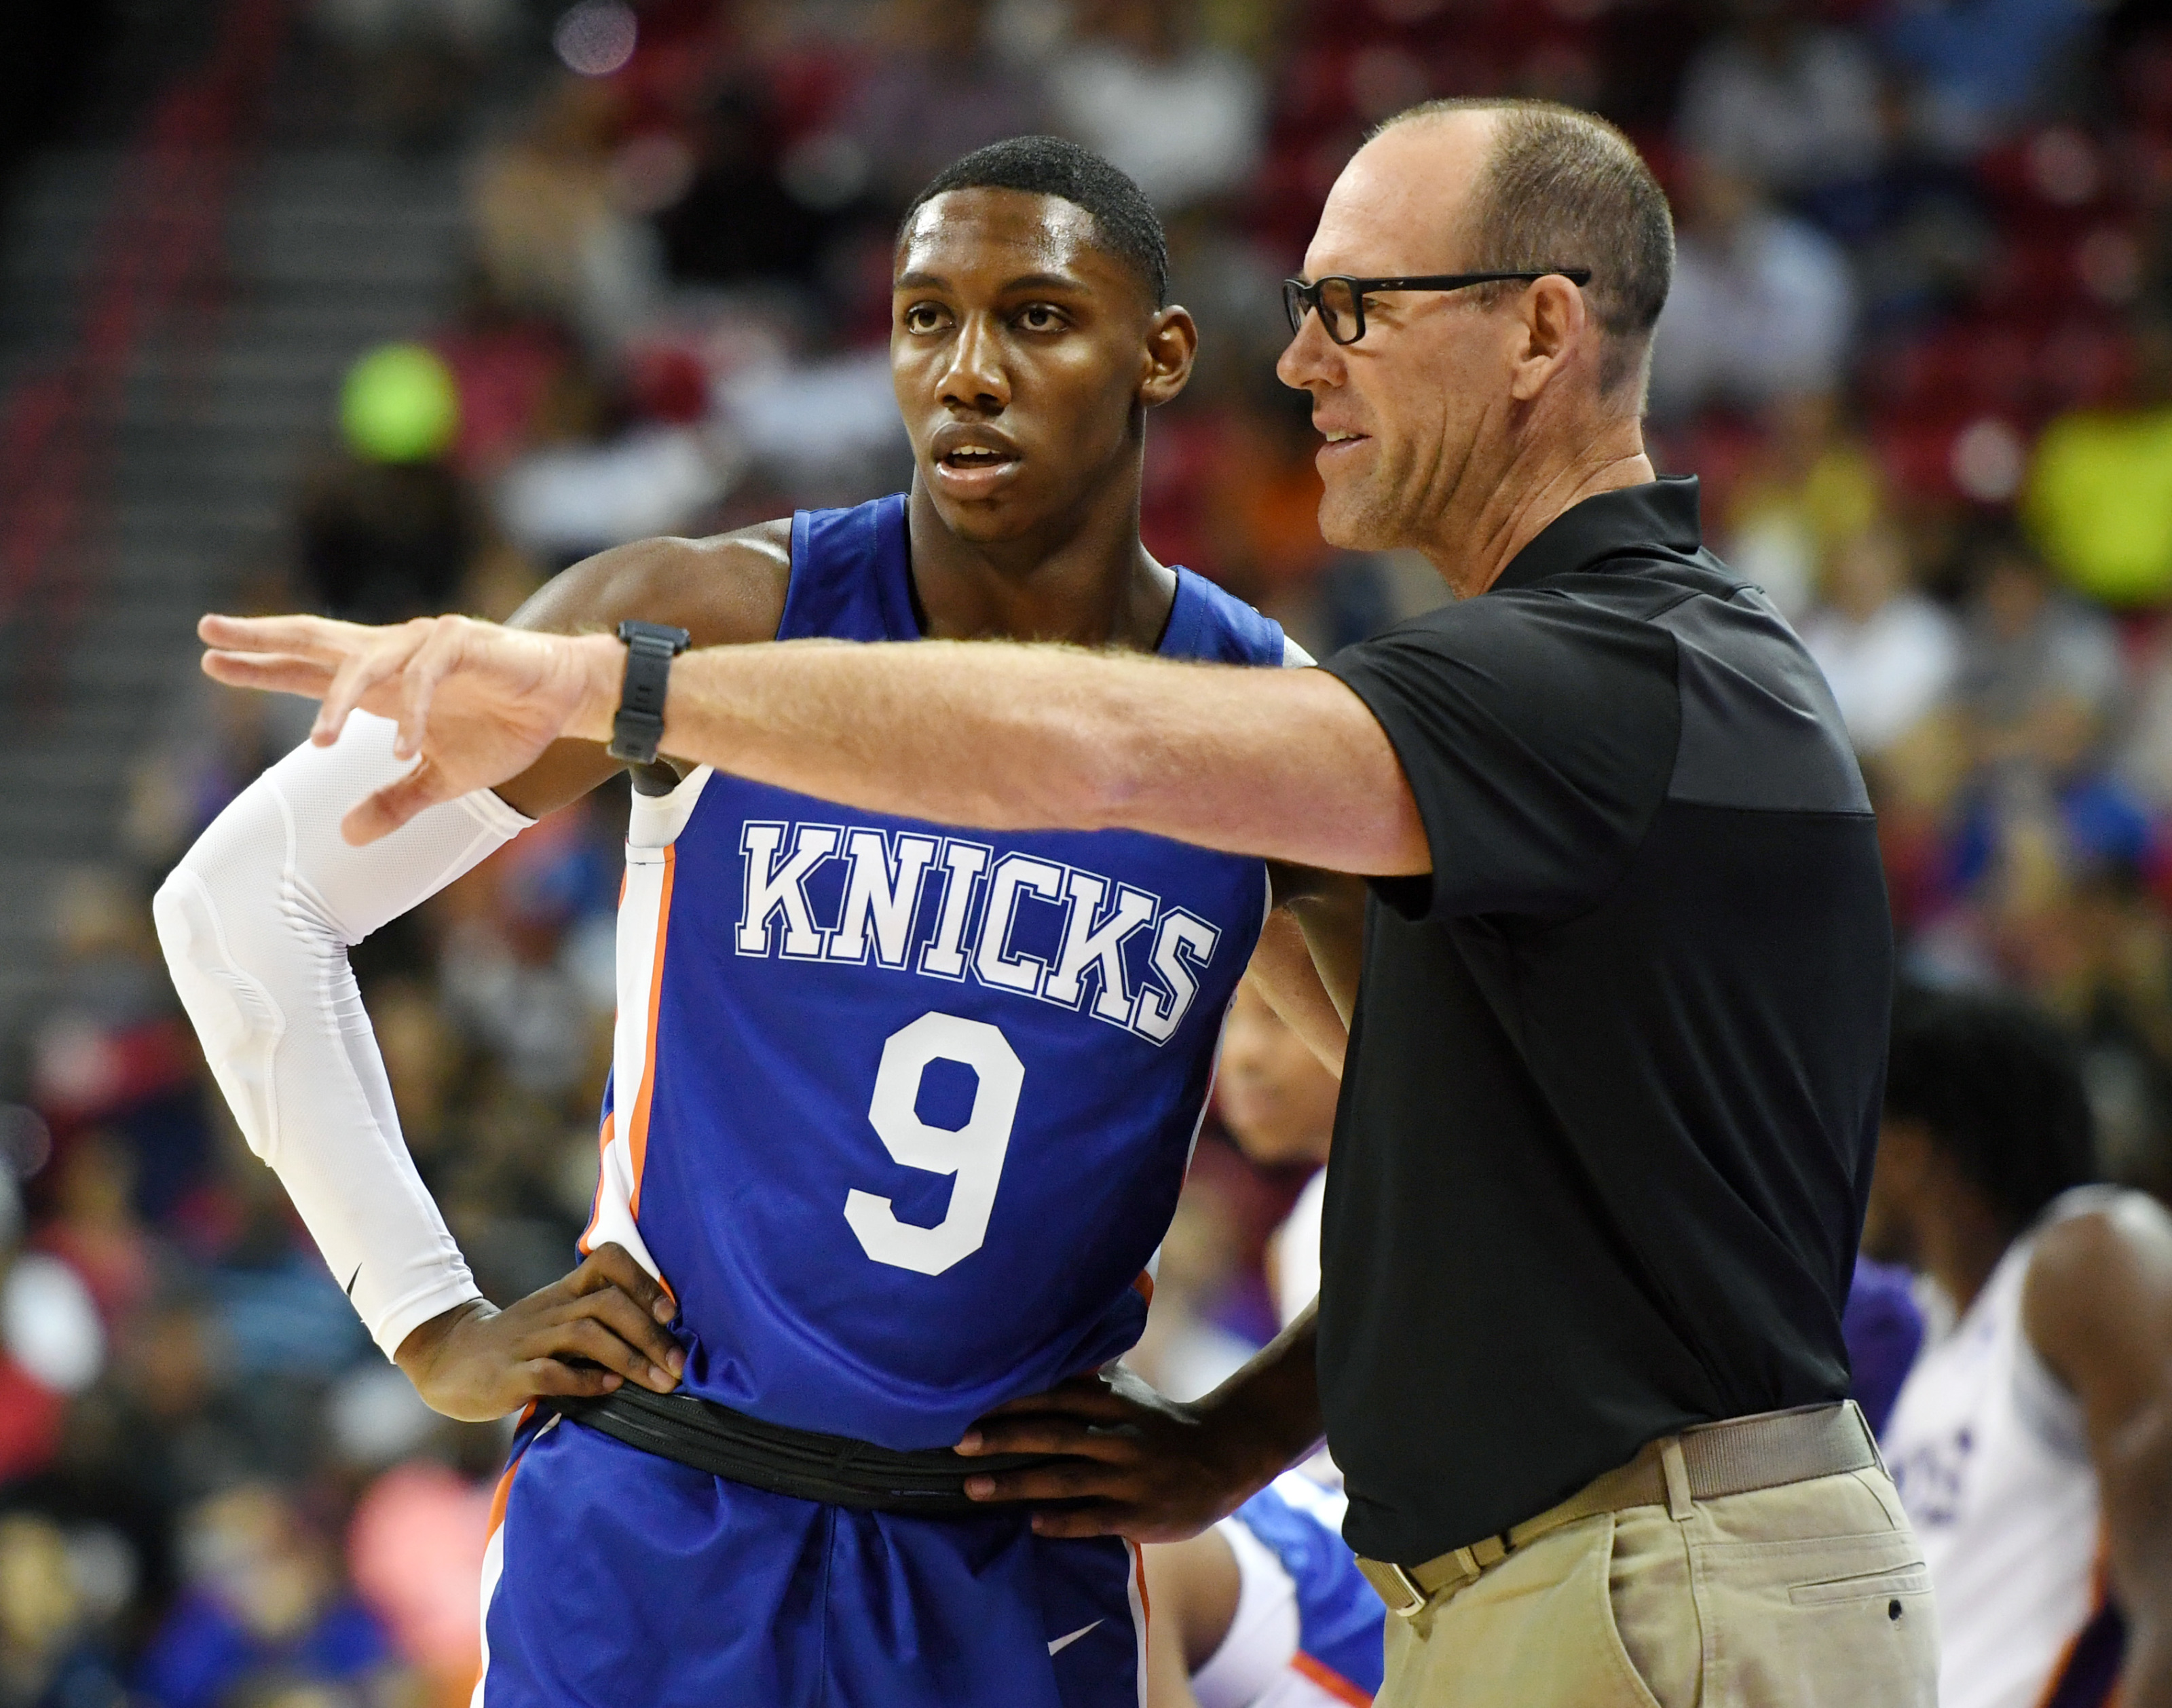 RJ Barrett Injury: How will the New York Knicks adjust in the